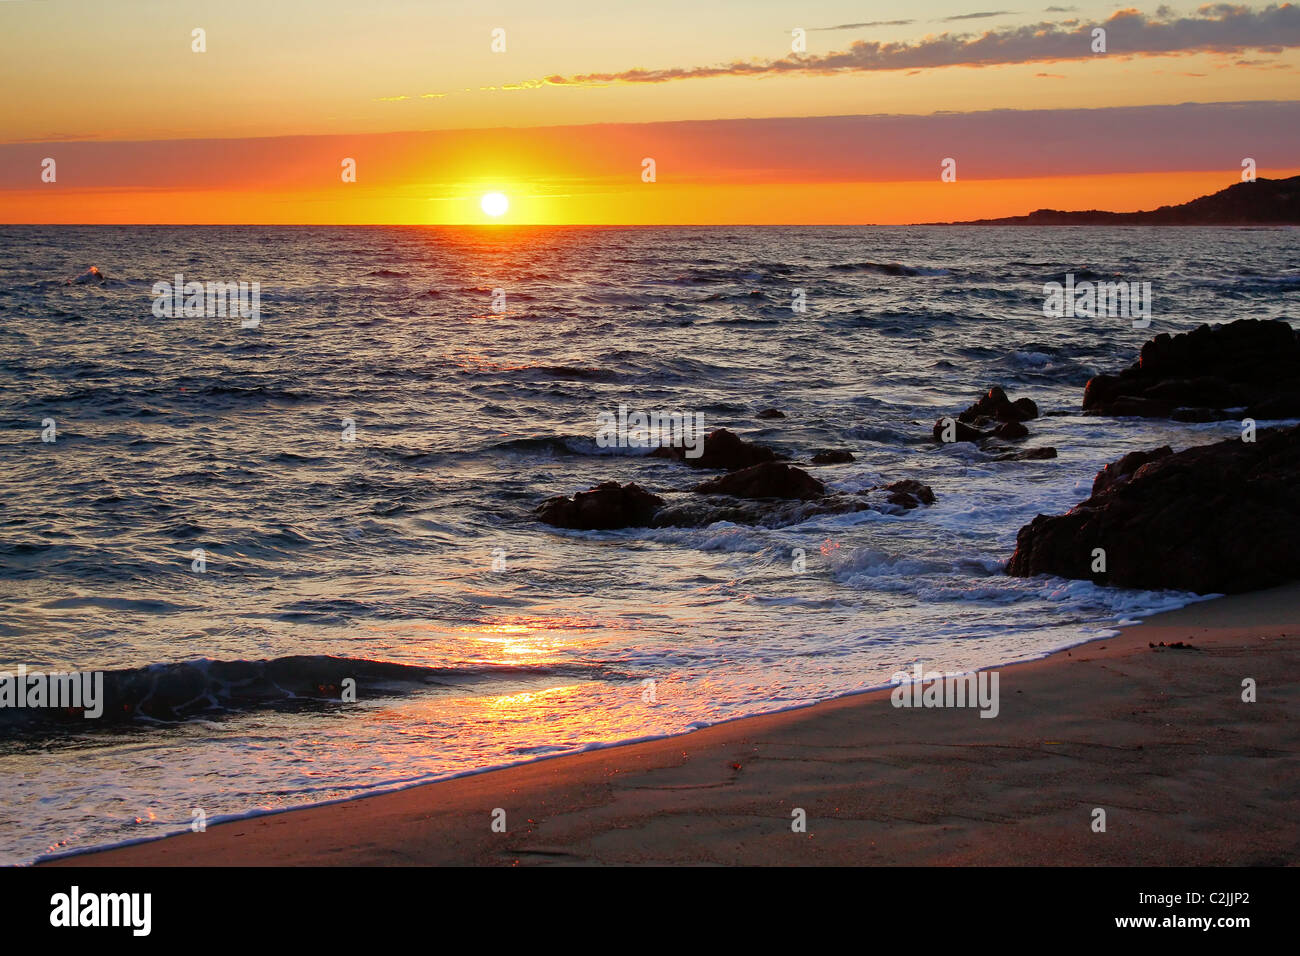 sea sunset Stock Photo